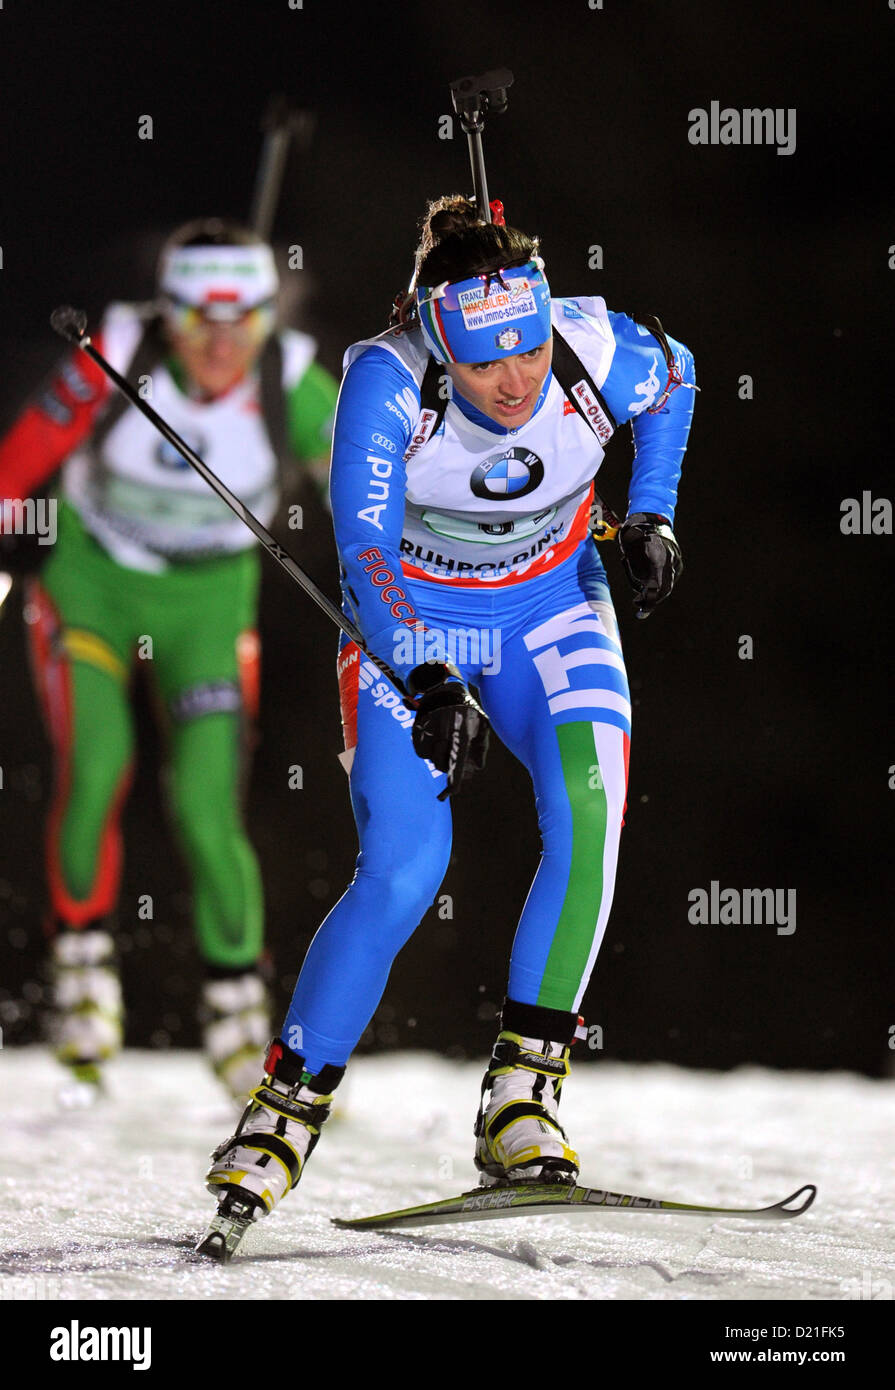 Italienische Biathletin Karin Oberhofer in Aktion während der Frauen Staffellauf bei der Biathlon-Weltcup in der Chiemgau Arena in Ruhpolding, Deutschland, 9. Januar 2013. Foto: Tobias Hase Stockfoto